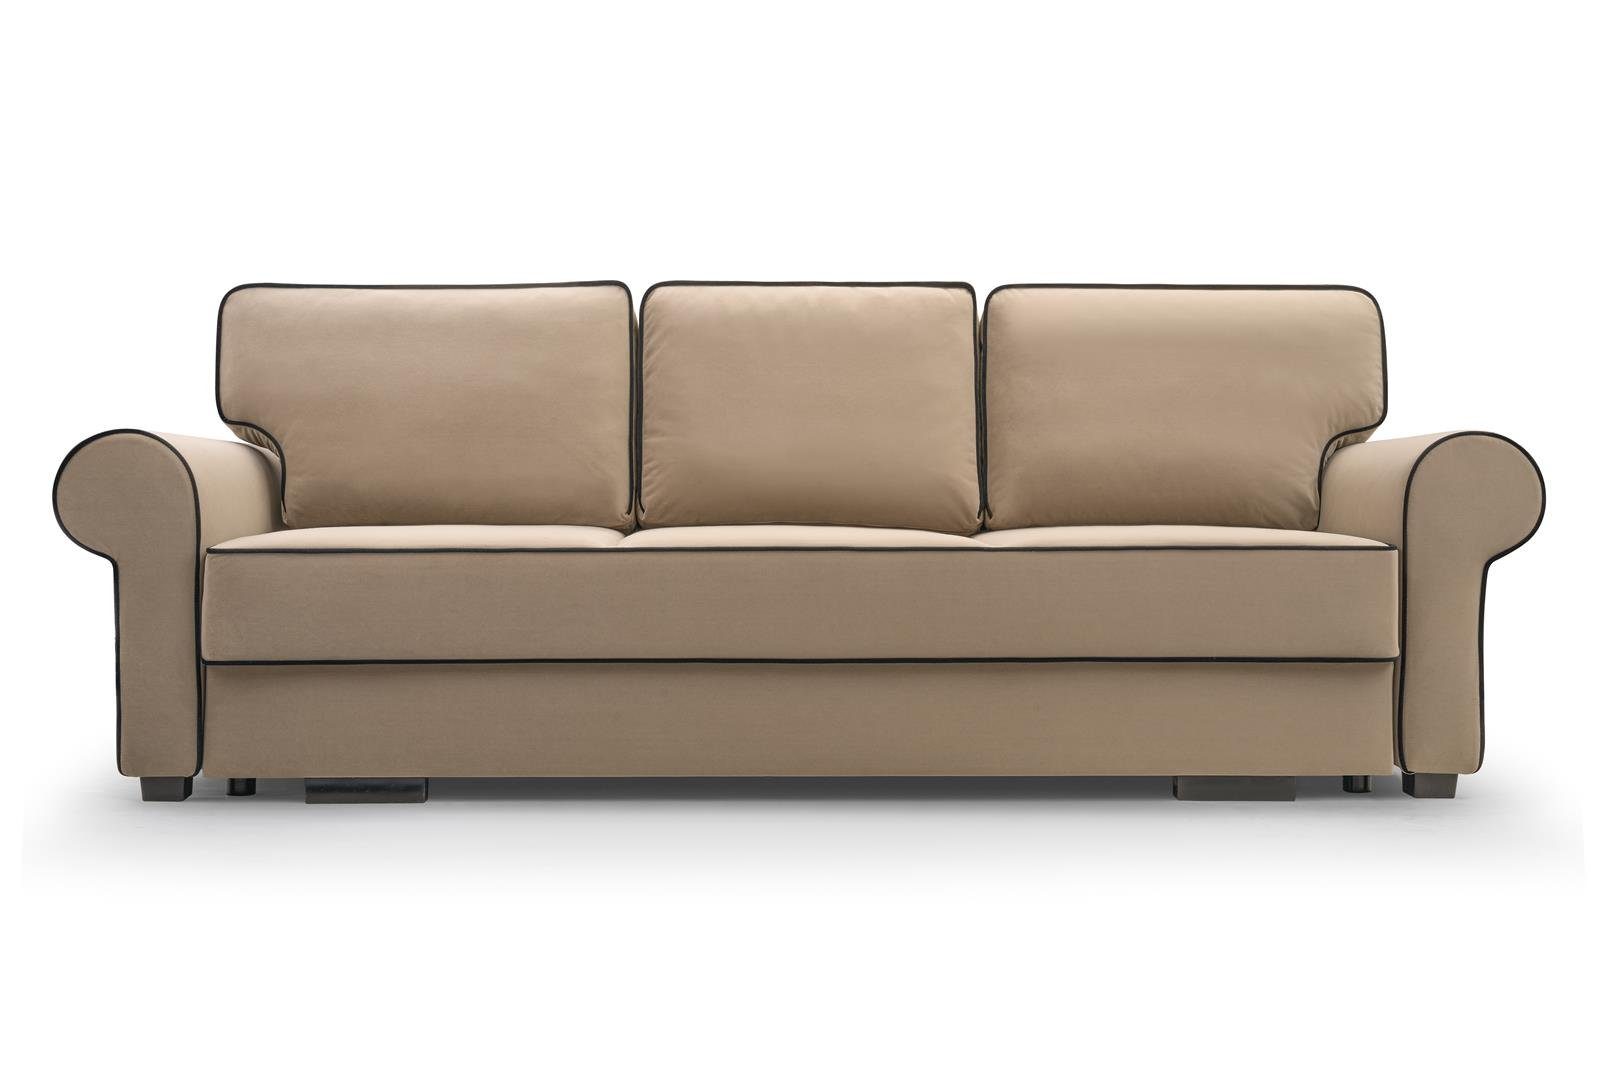 Beautysofa 3-Sitzer BELLO, in Hellbraun inklusive für Schlaffunktion + (mattvelvet Sofa Wohnzimmer, Veloursstoff, 09 99) aus Bettkasten, Dreisitzer Wellenfedern, Retro-Stil